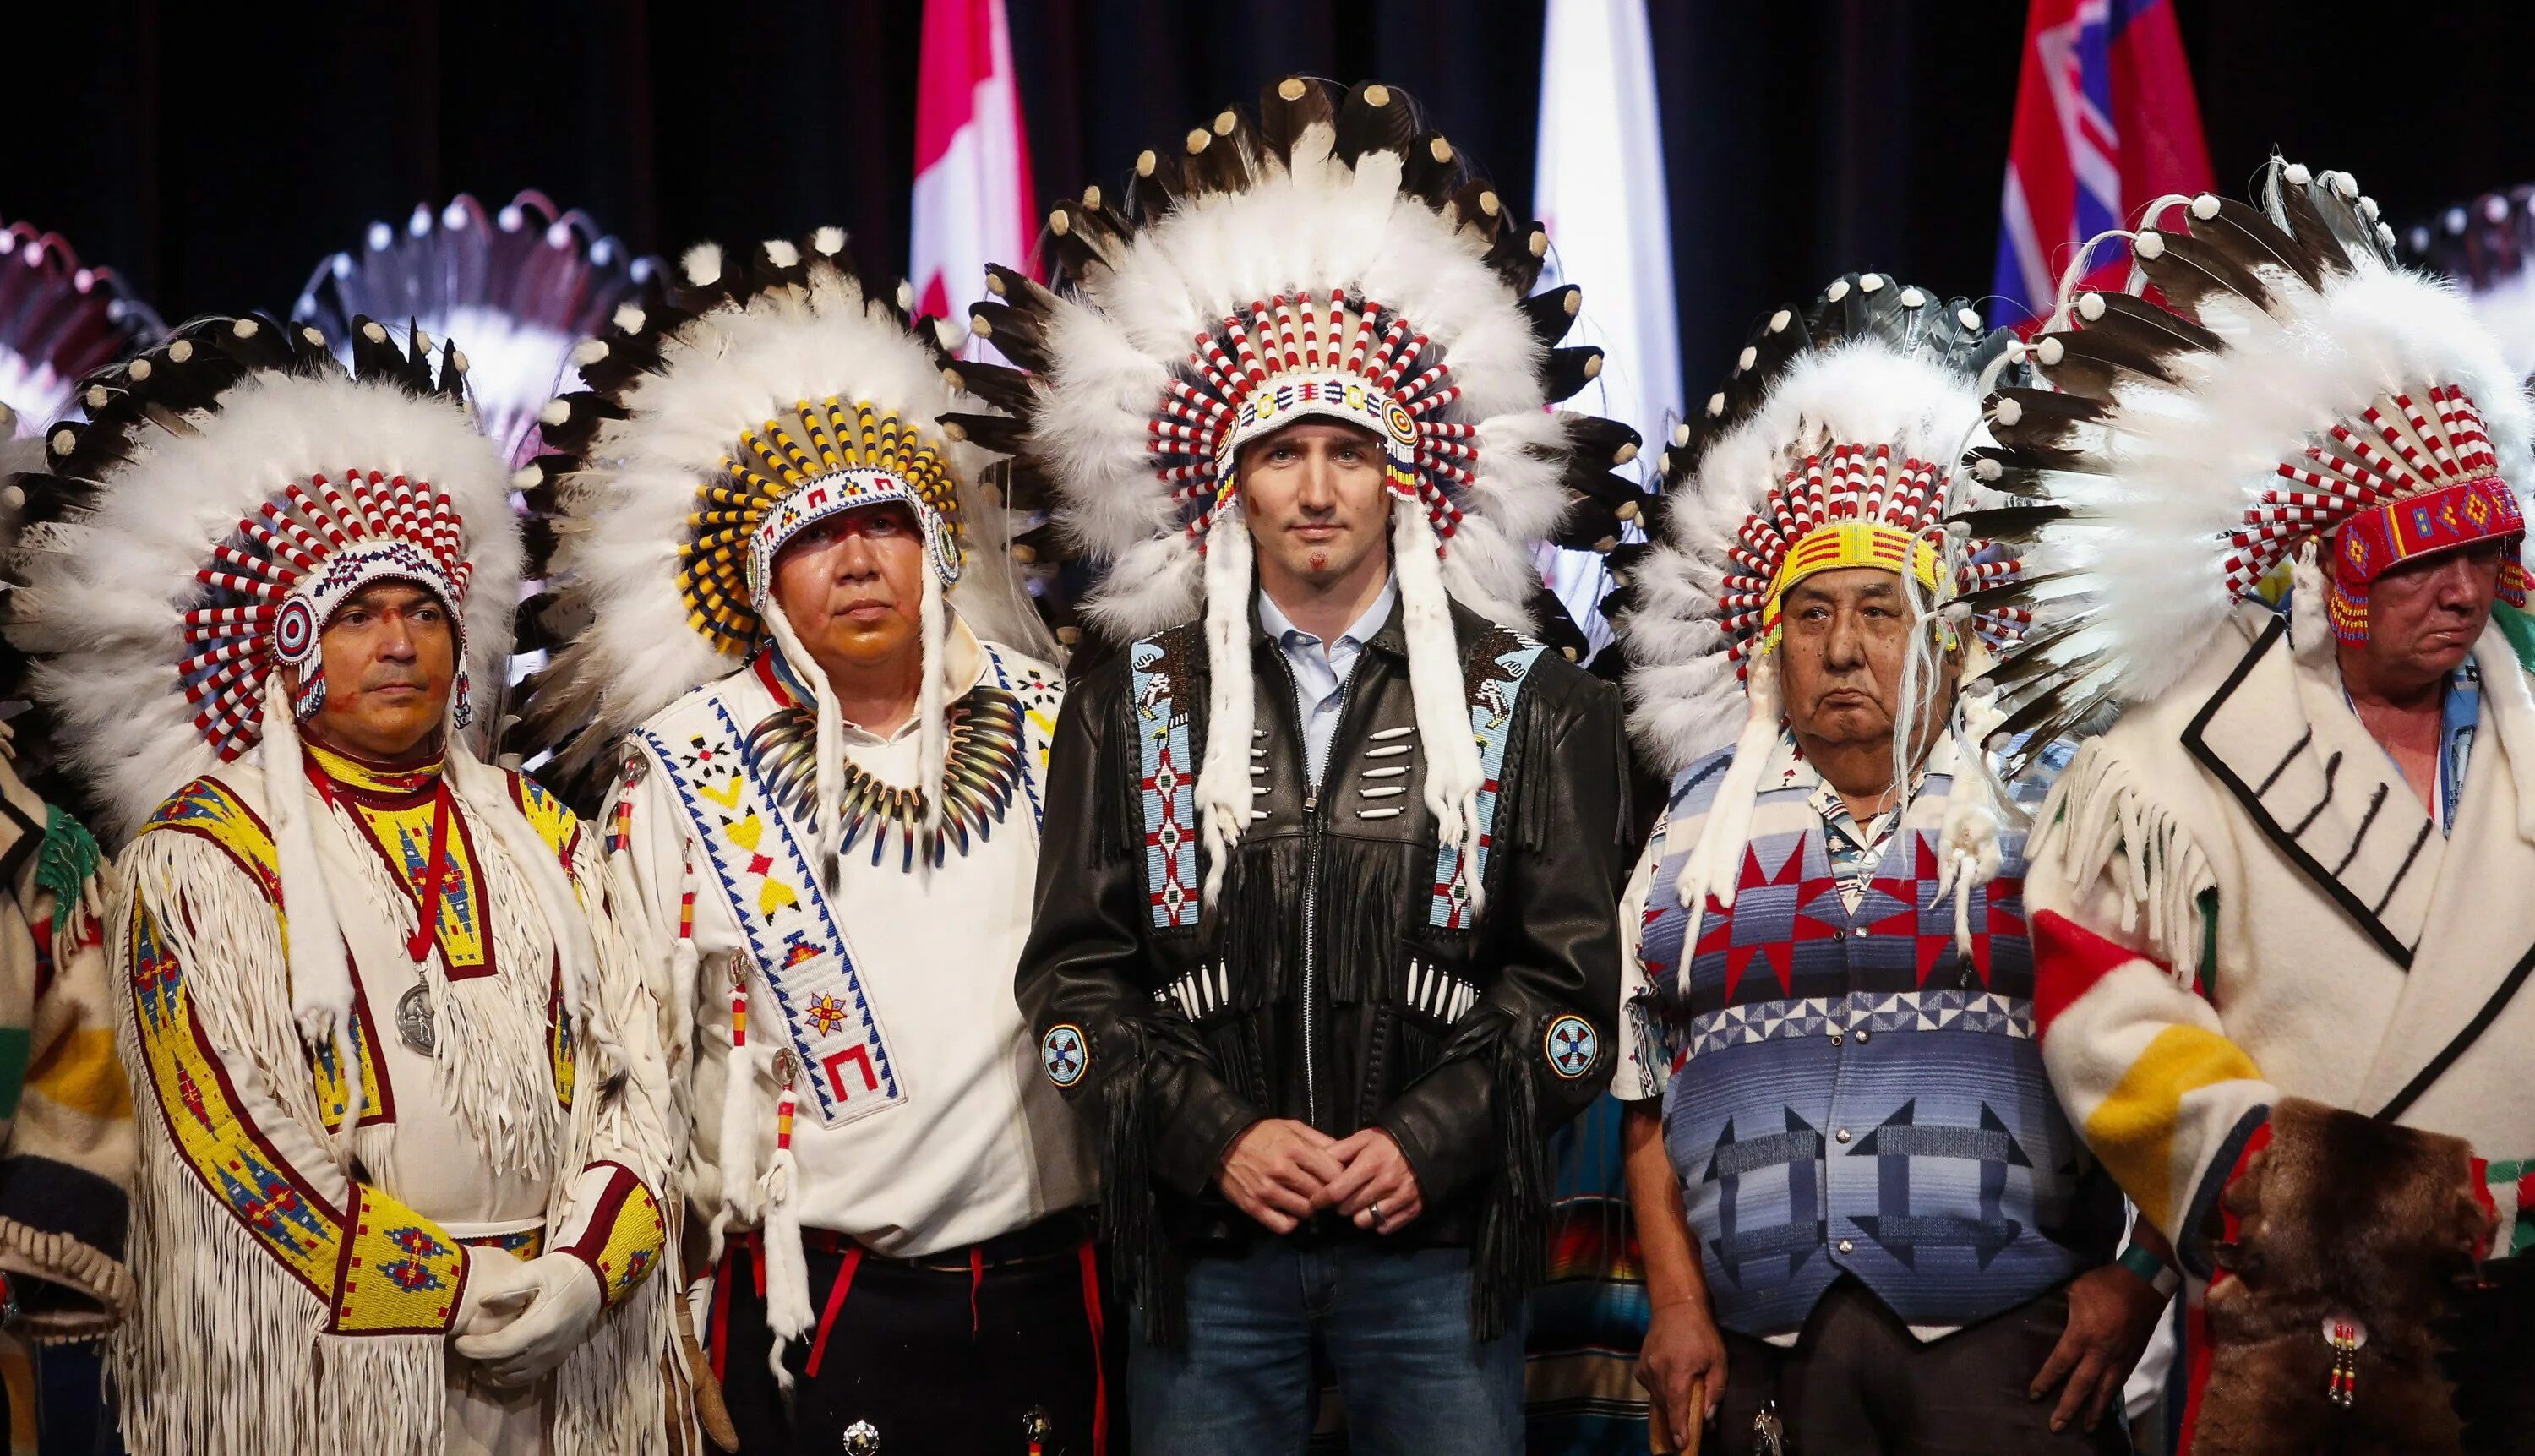 Индейцы Канады народы Канады. Канада индейцы алеуты. Северные индейцы Канады. Коренные жители Канады индейцы. Какие народы коренные в северной америке